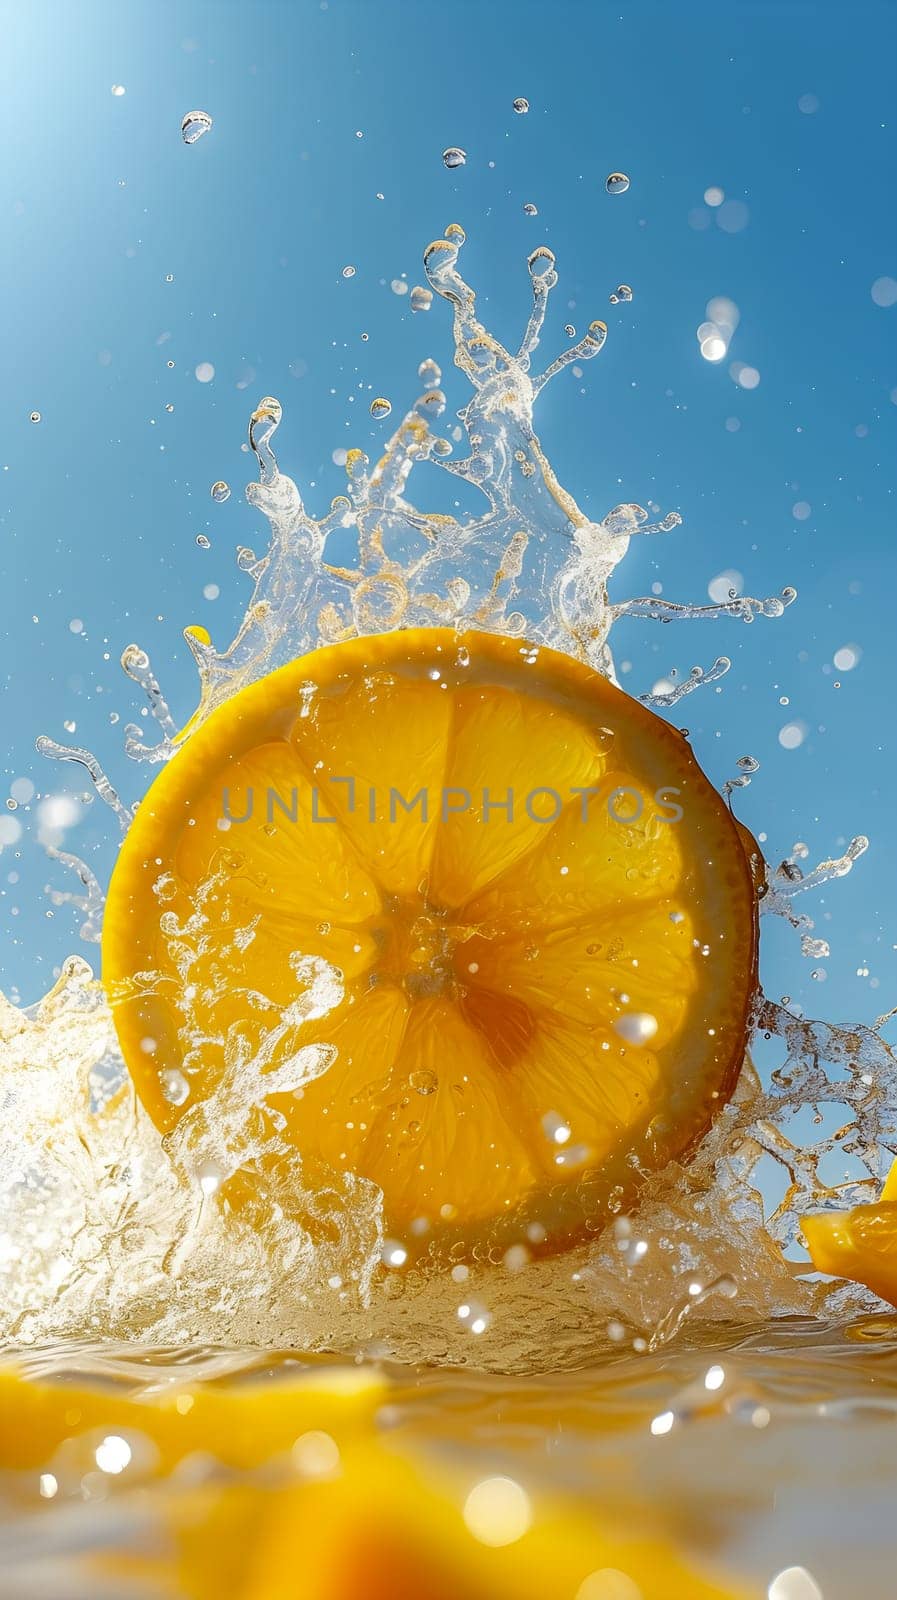 Fresh lemon Slice Splashing in Water Against a Sunny Sky by chrisroll